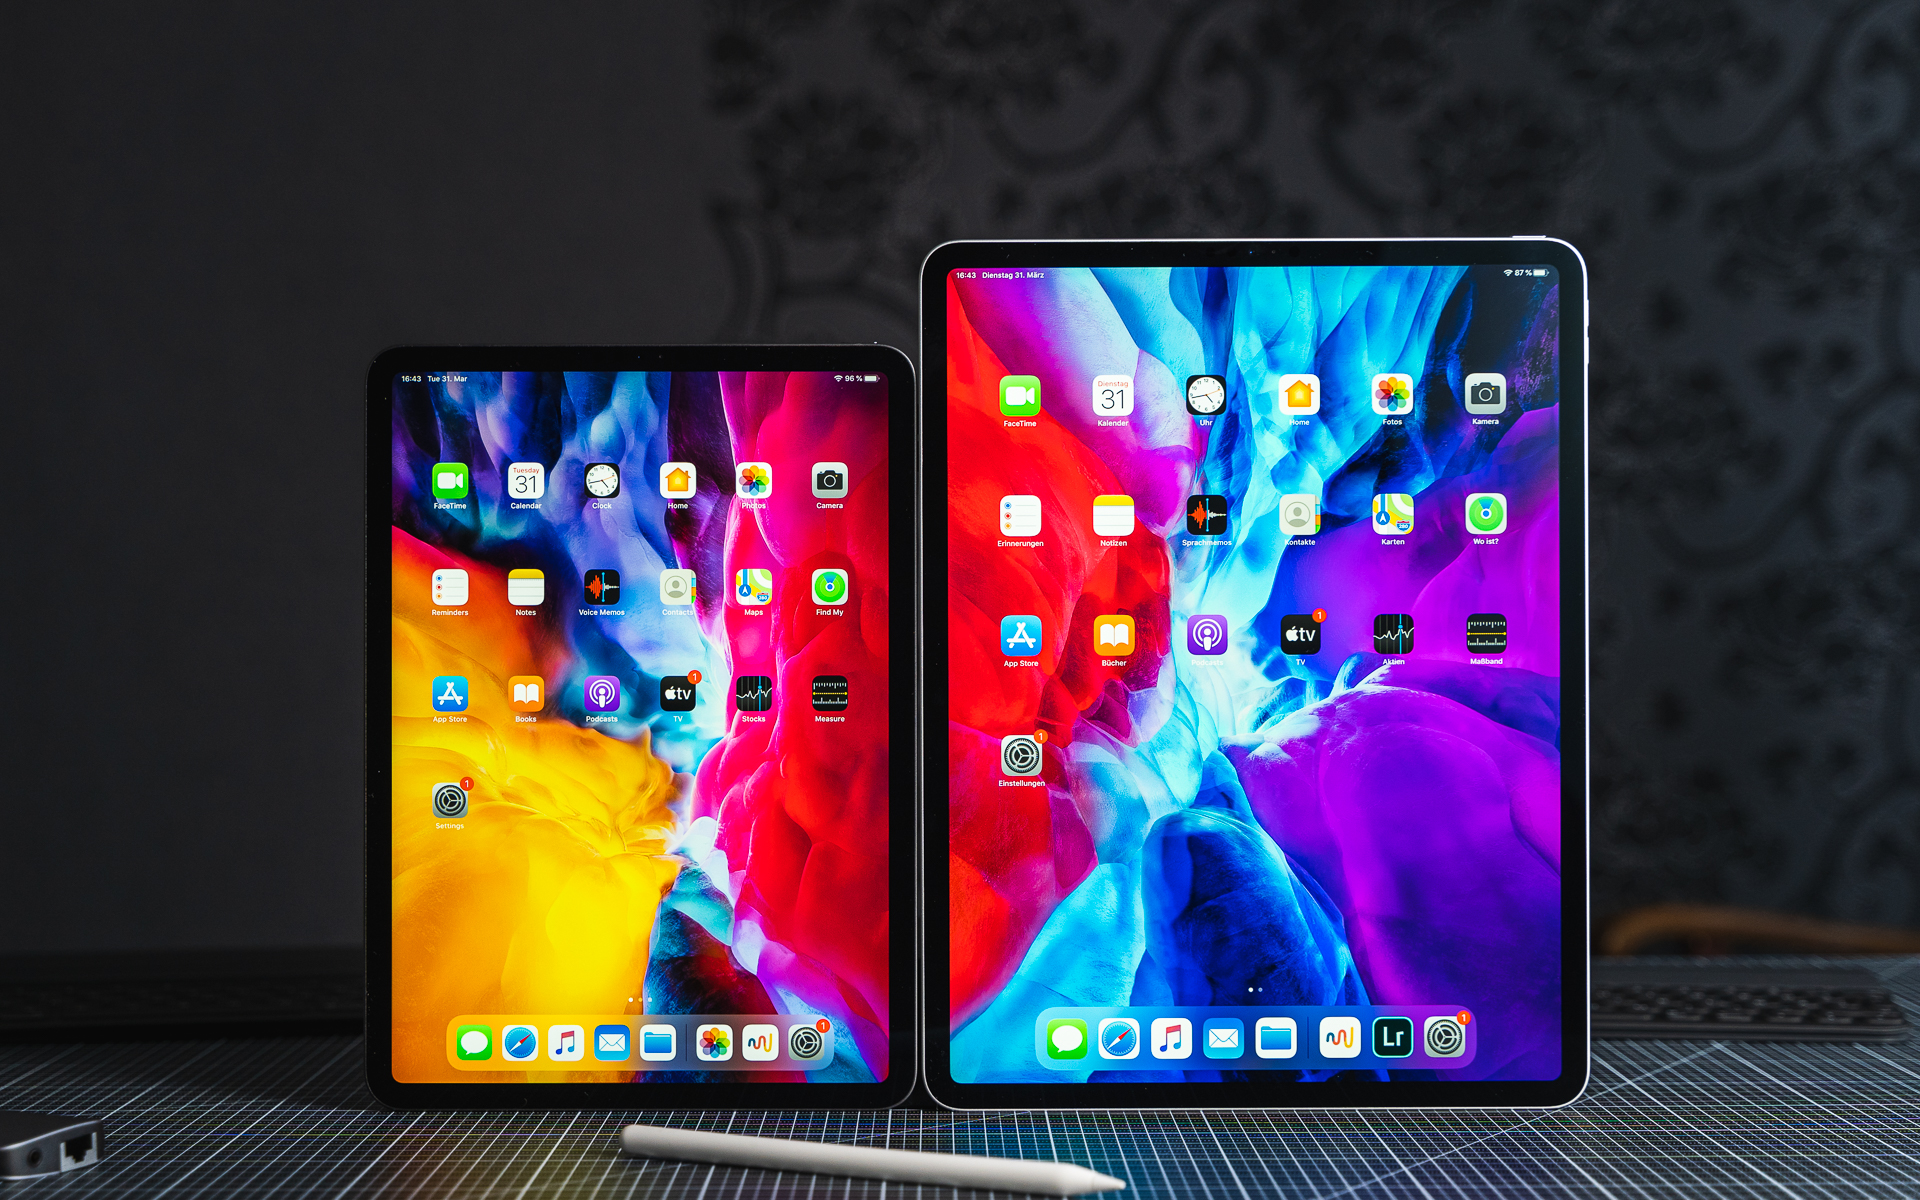 Sarkma Rahatına düşkünlük kale  11-Inch Or 12.9-Inch iPad Pro 2020: What's The Better Size?